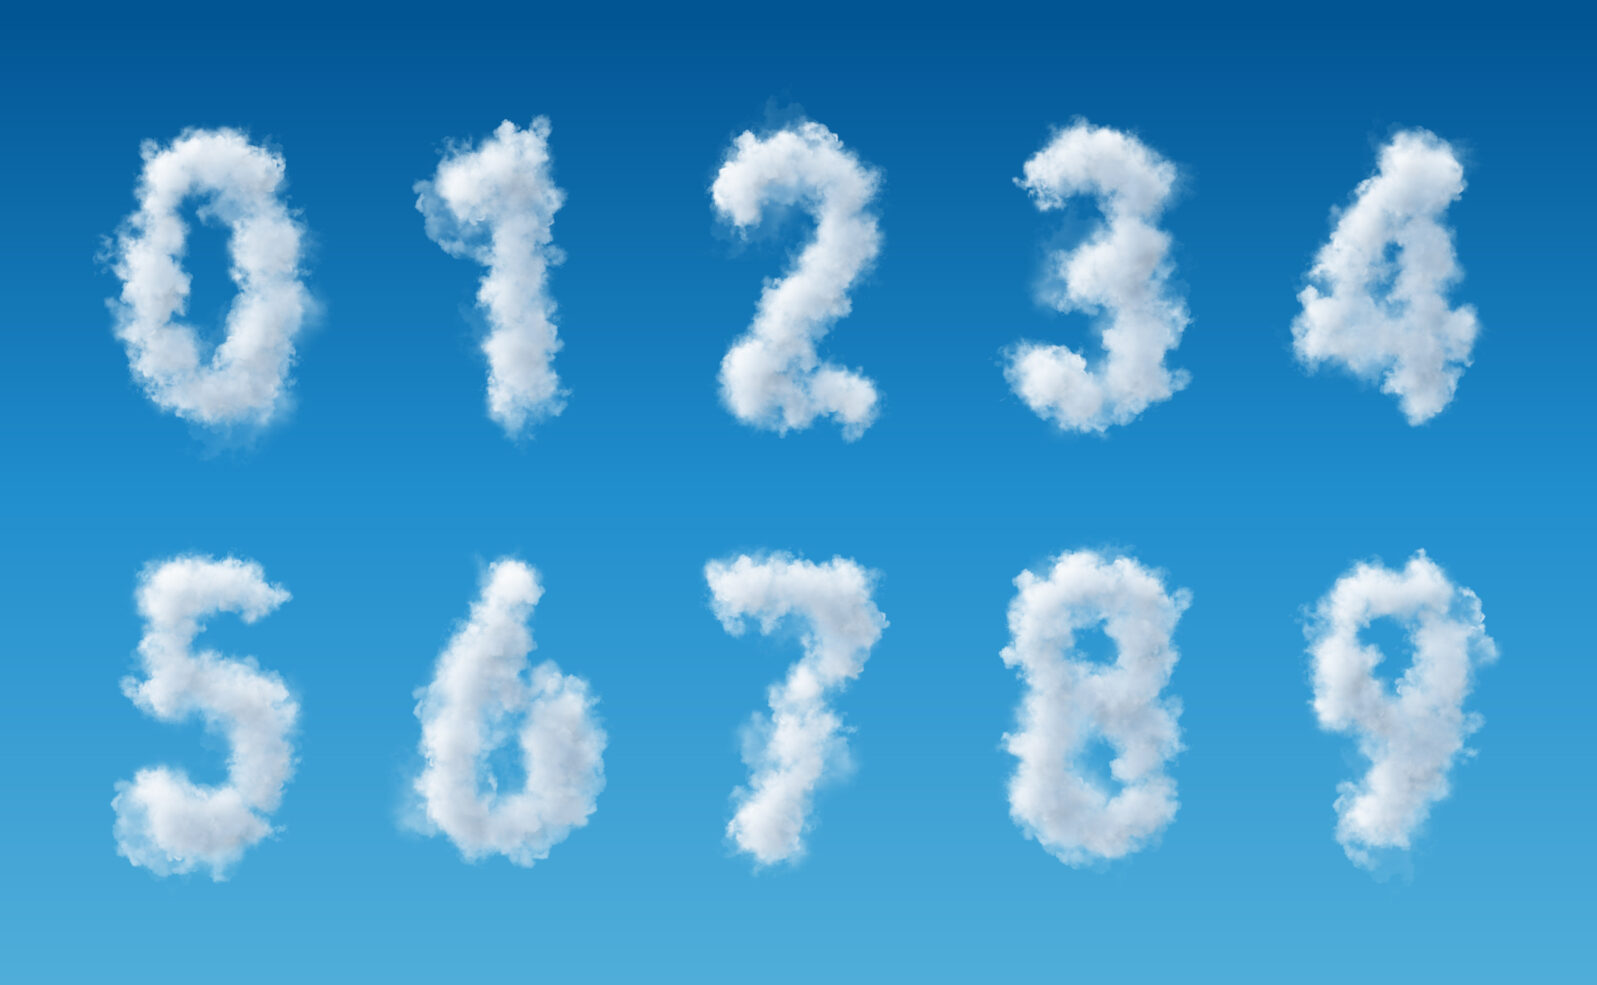 cloud numbers in blue sky